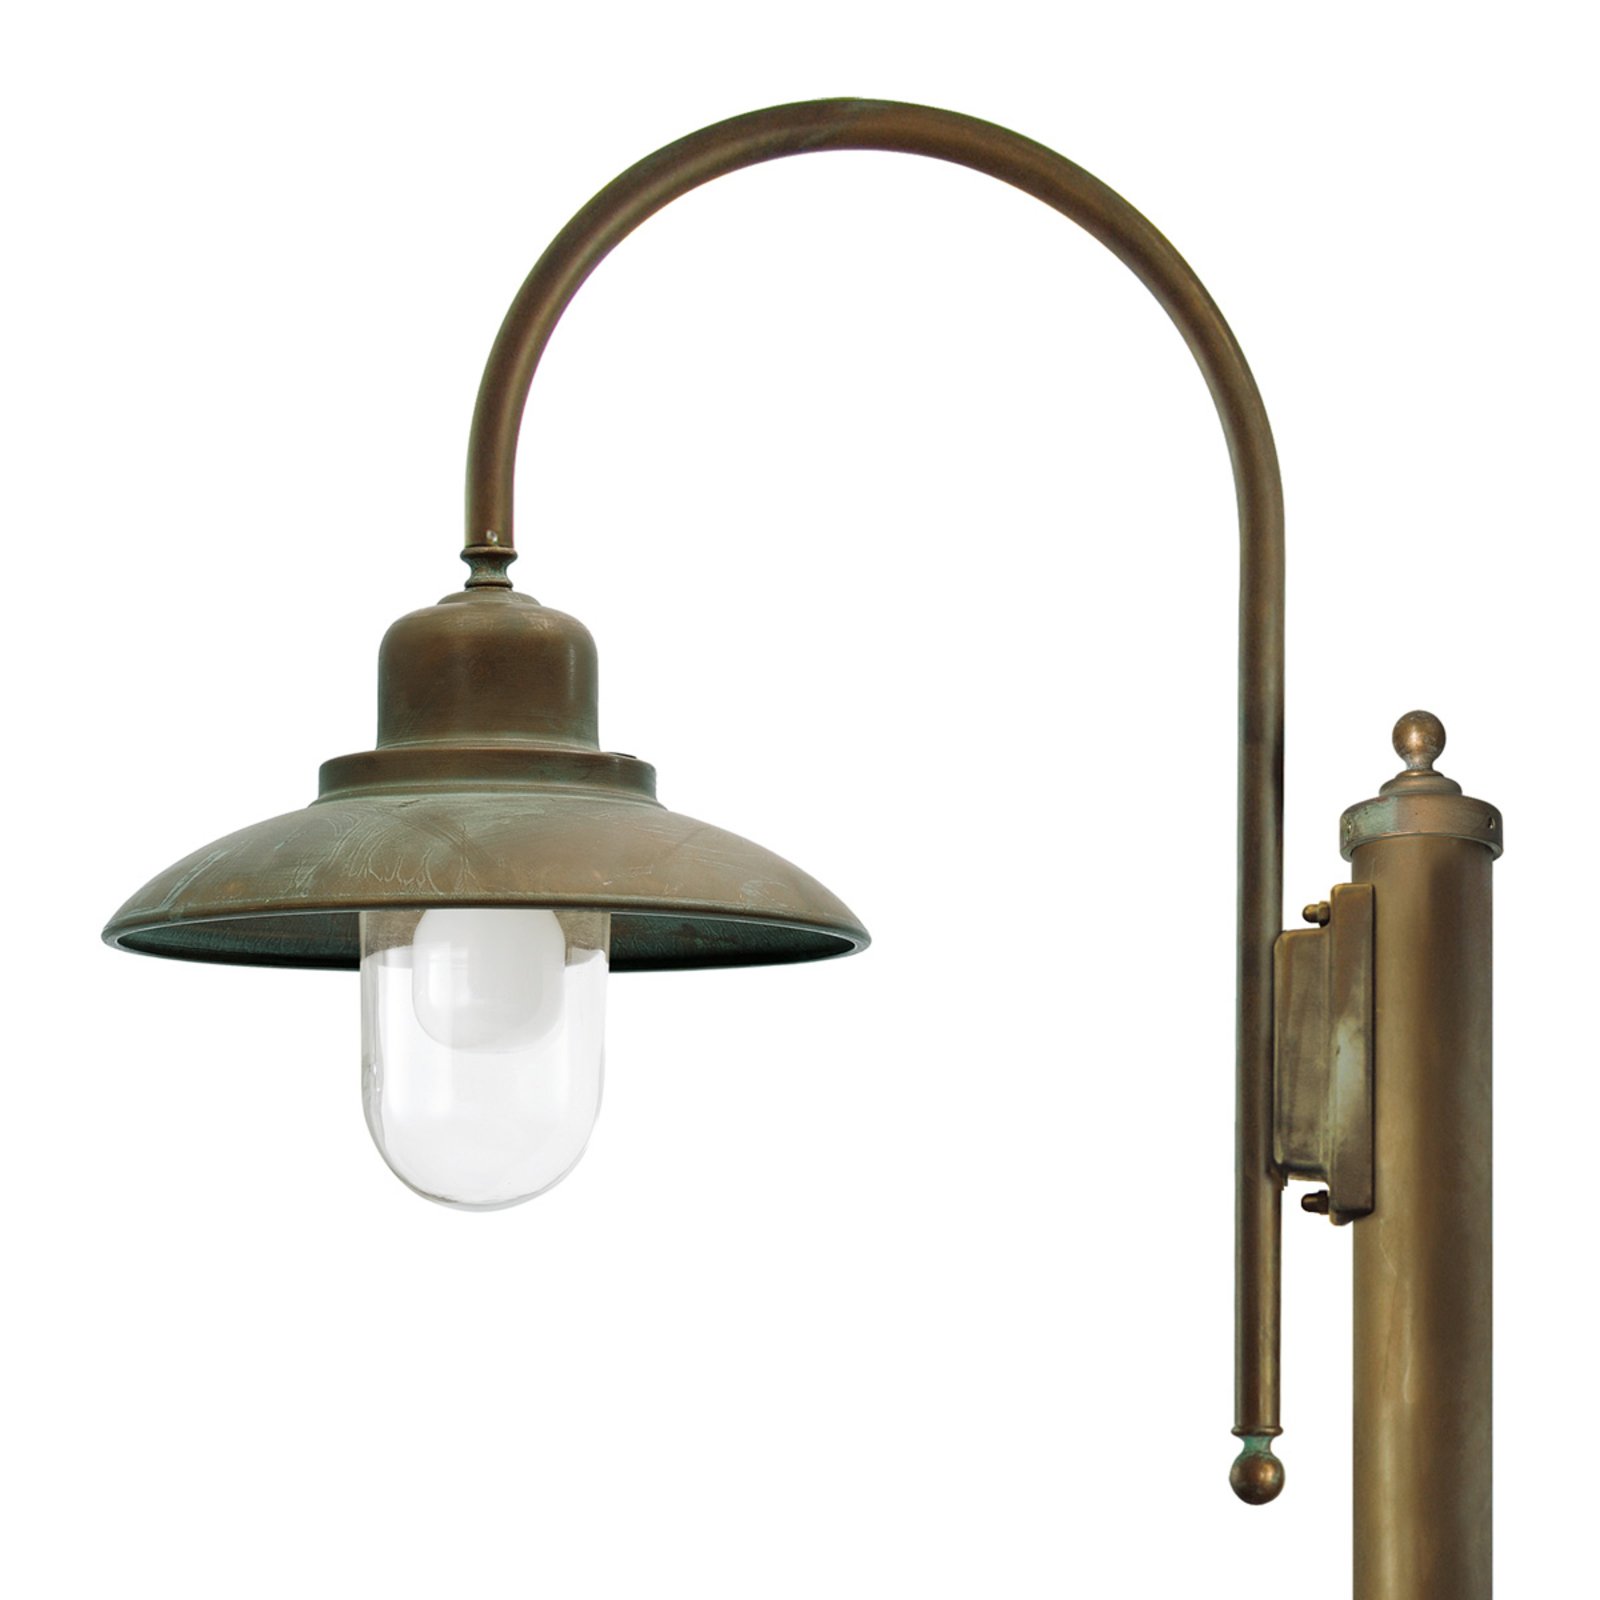 Casale lamp post 270 cm 1-bulb